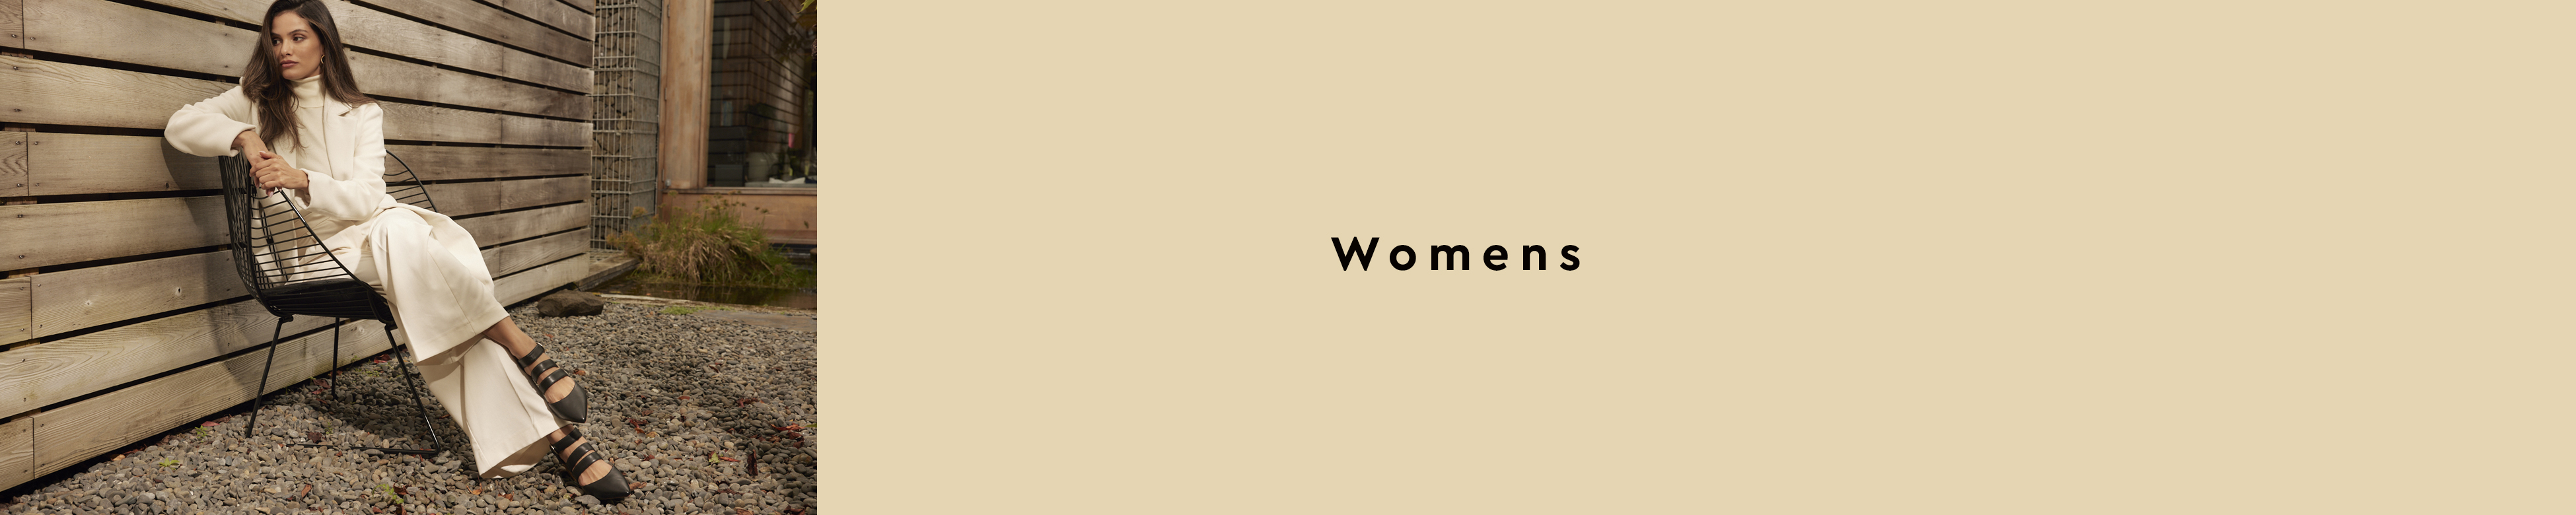 Womens_banner